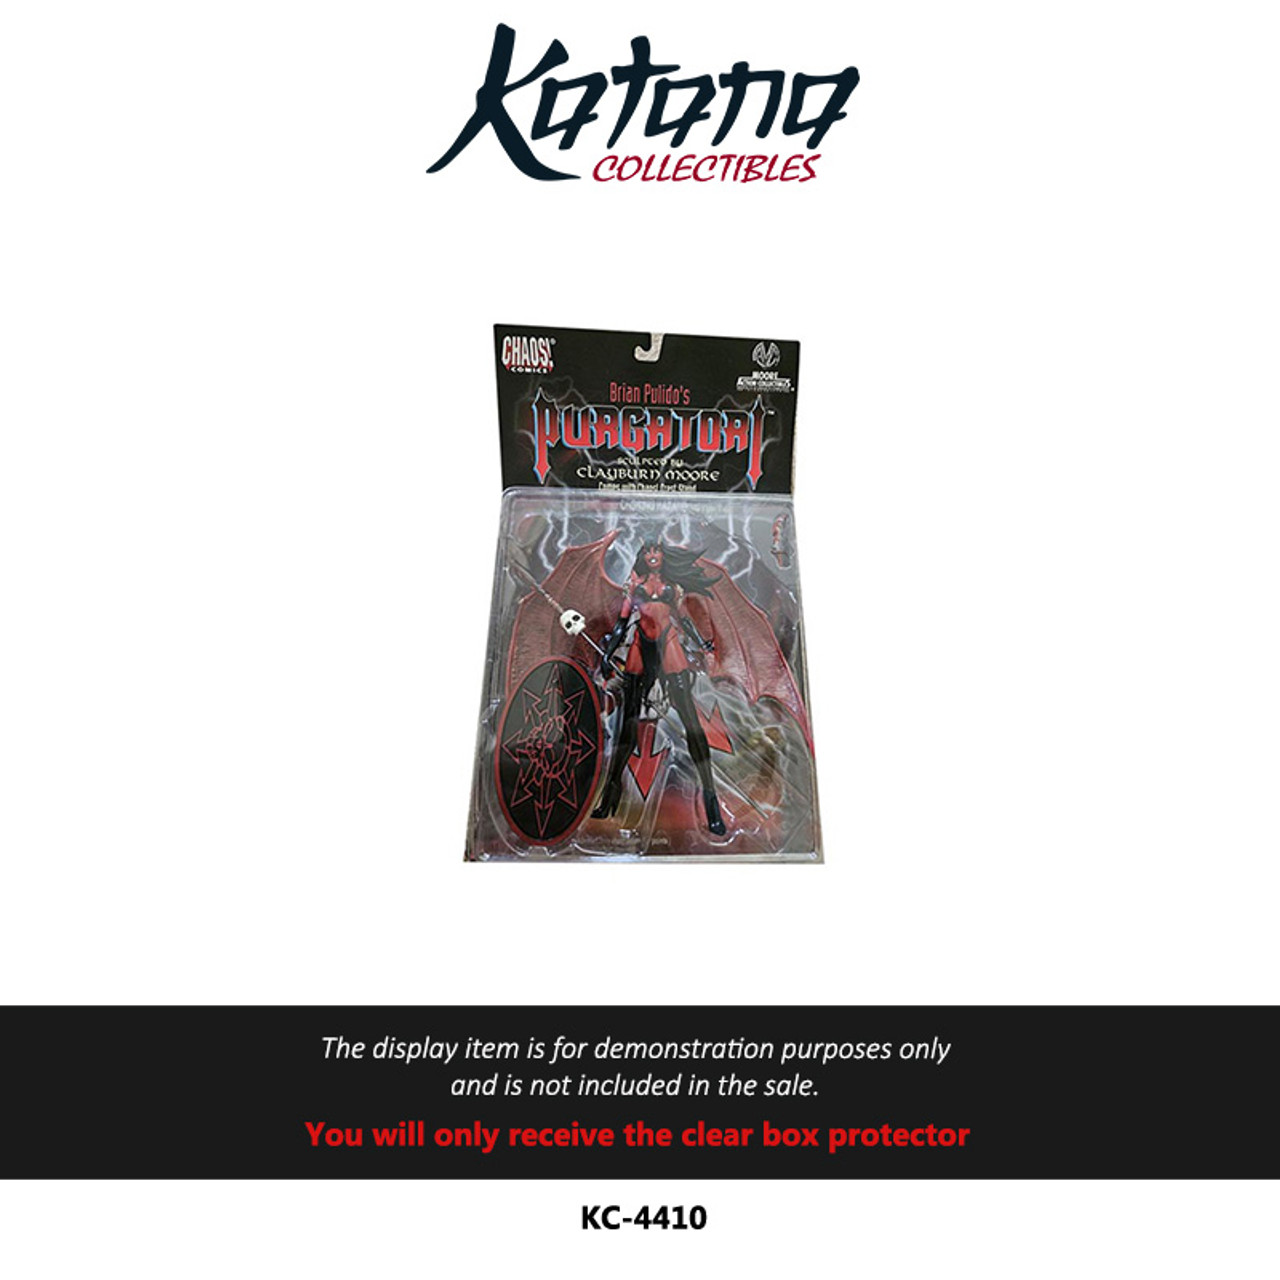 Katana Collectibles Protector For Brian Pulido's Purgatori by Chaos Comics